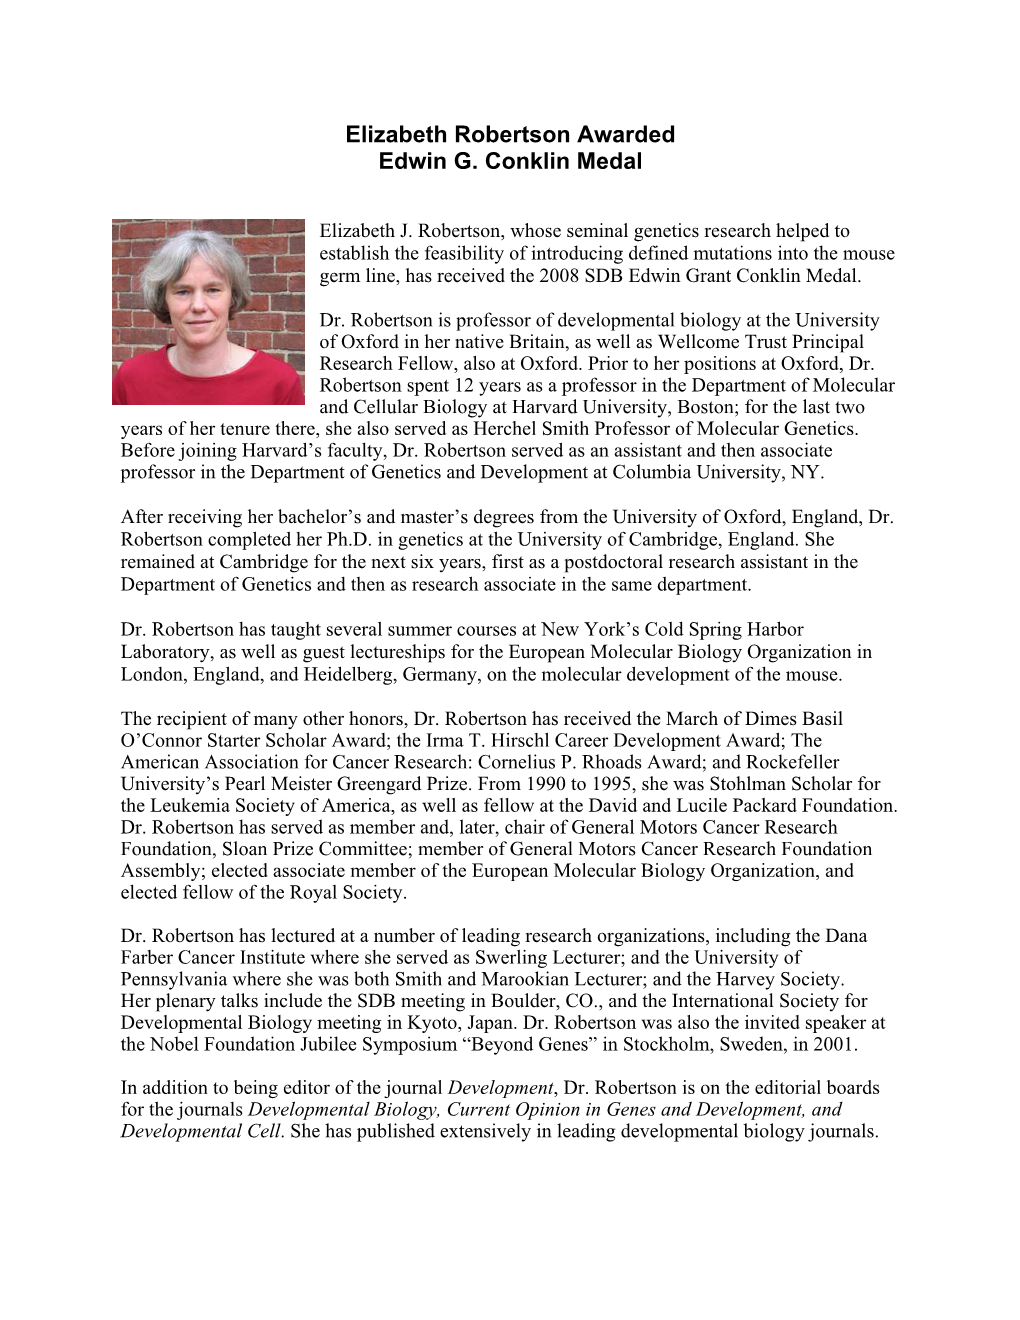 Elizabeth Robertson Awarded Edwin G. Conklin Medal